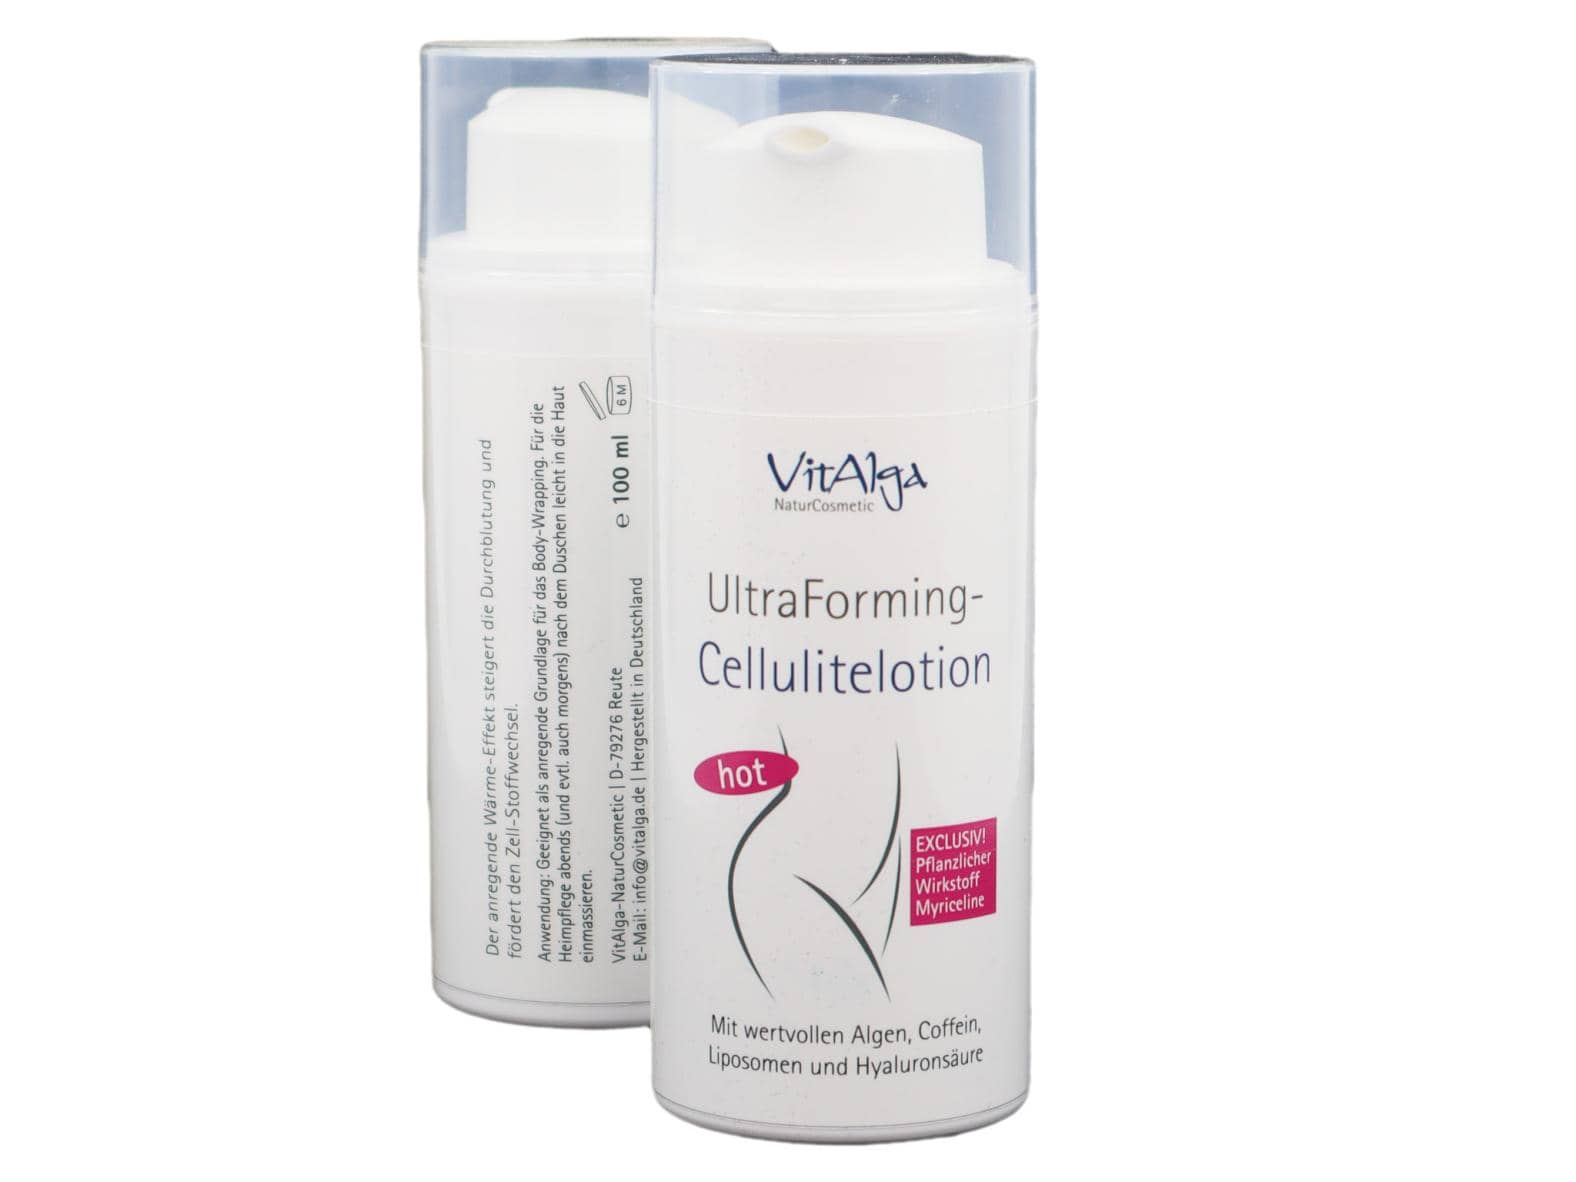 VitAlga UltraForming - Cellulitelotion hot - Mit anregendem Thermo-Effekt & exlusiven pflanzlichen Wirkstoffen